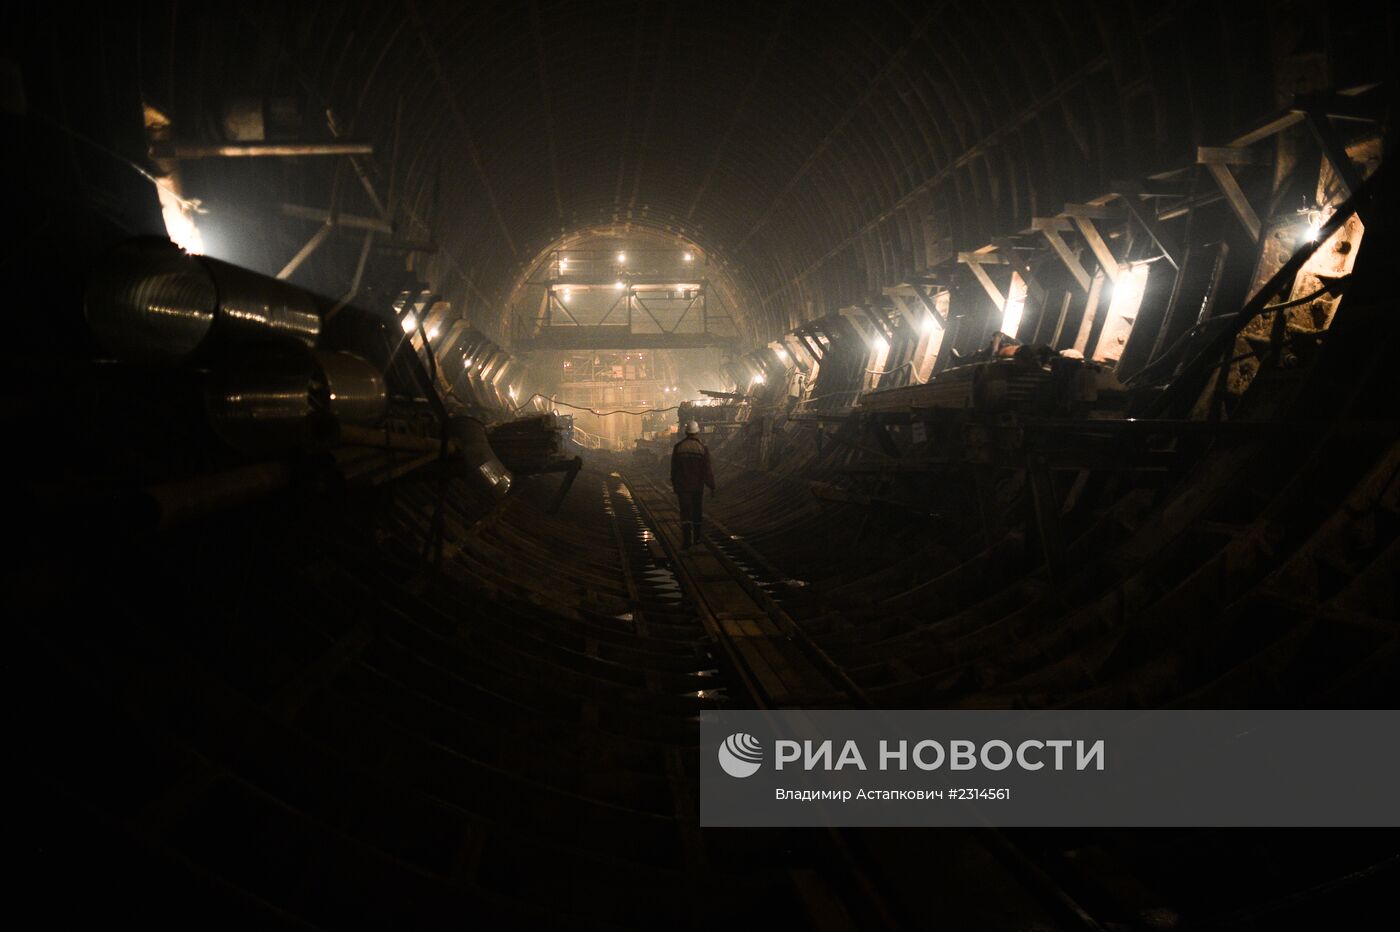 Строительство станции метрополитена "Петровская-Разумовская 2"